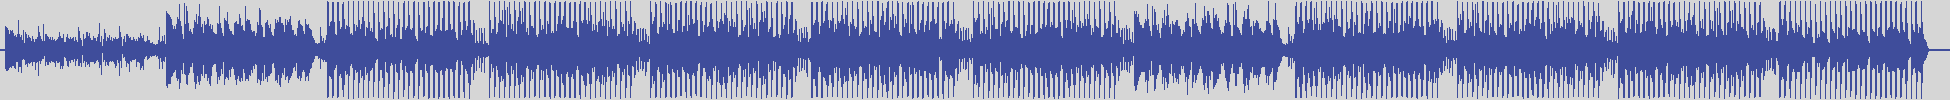 nf_boyz_records [NFY001] V6 - Reverse Technology [Evolving Mix] audio wave form